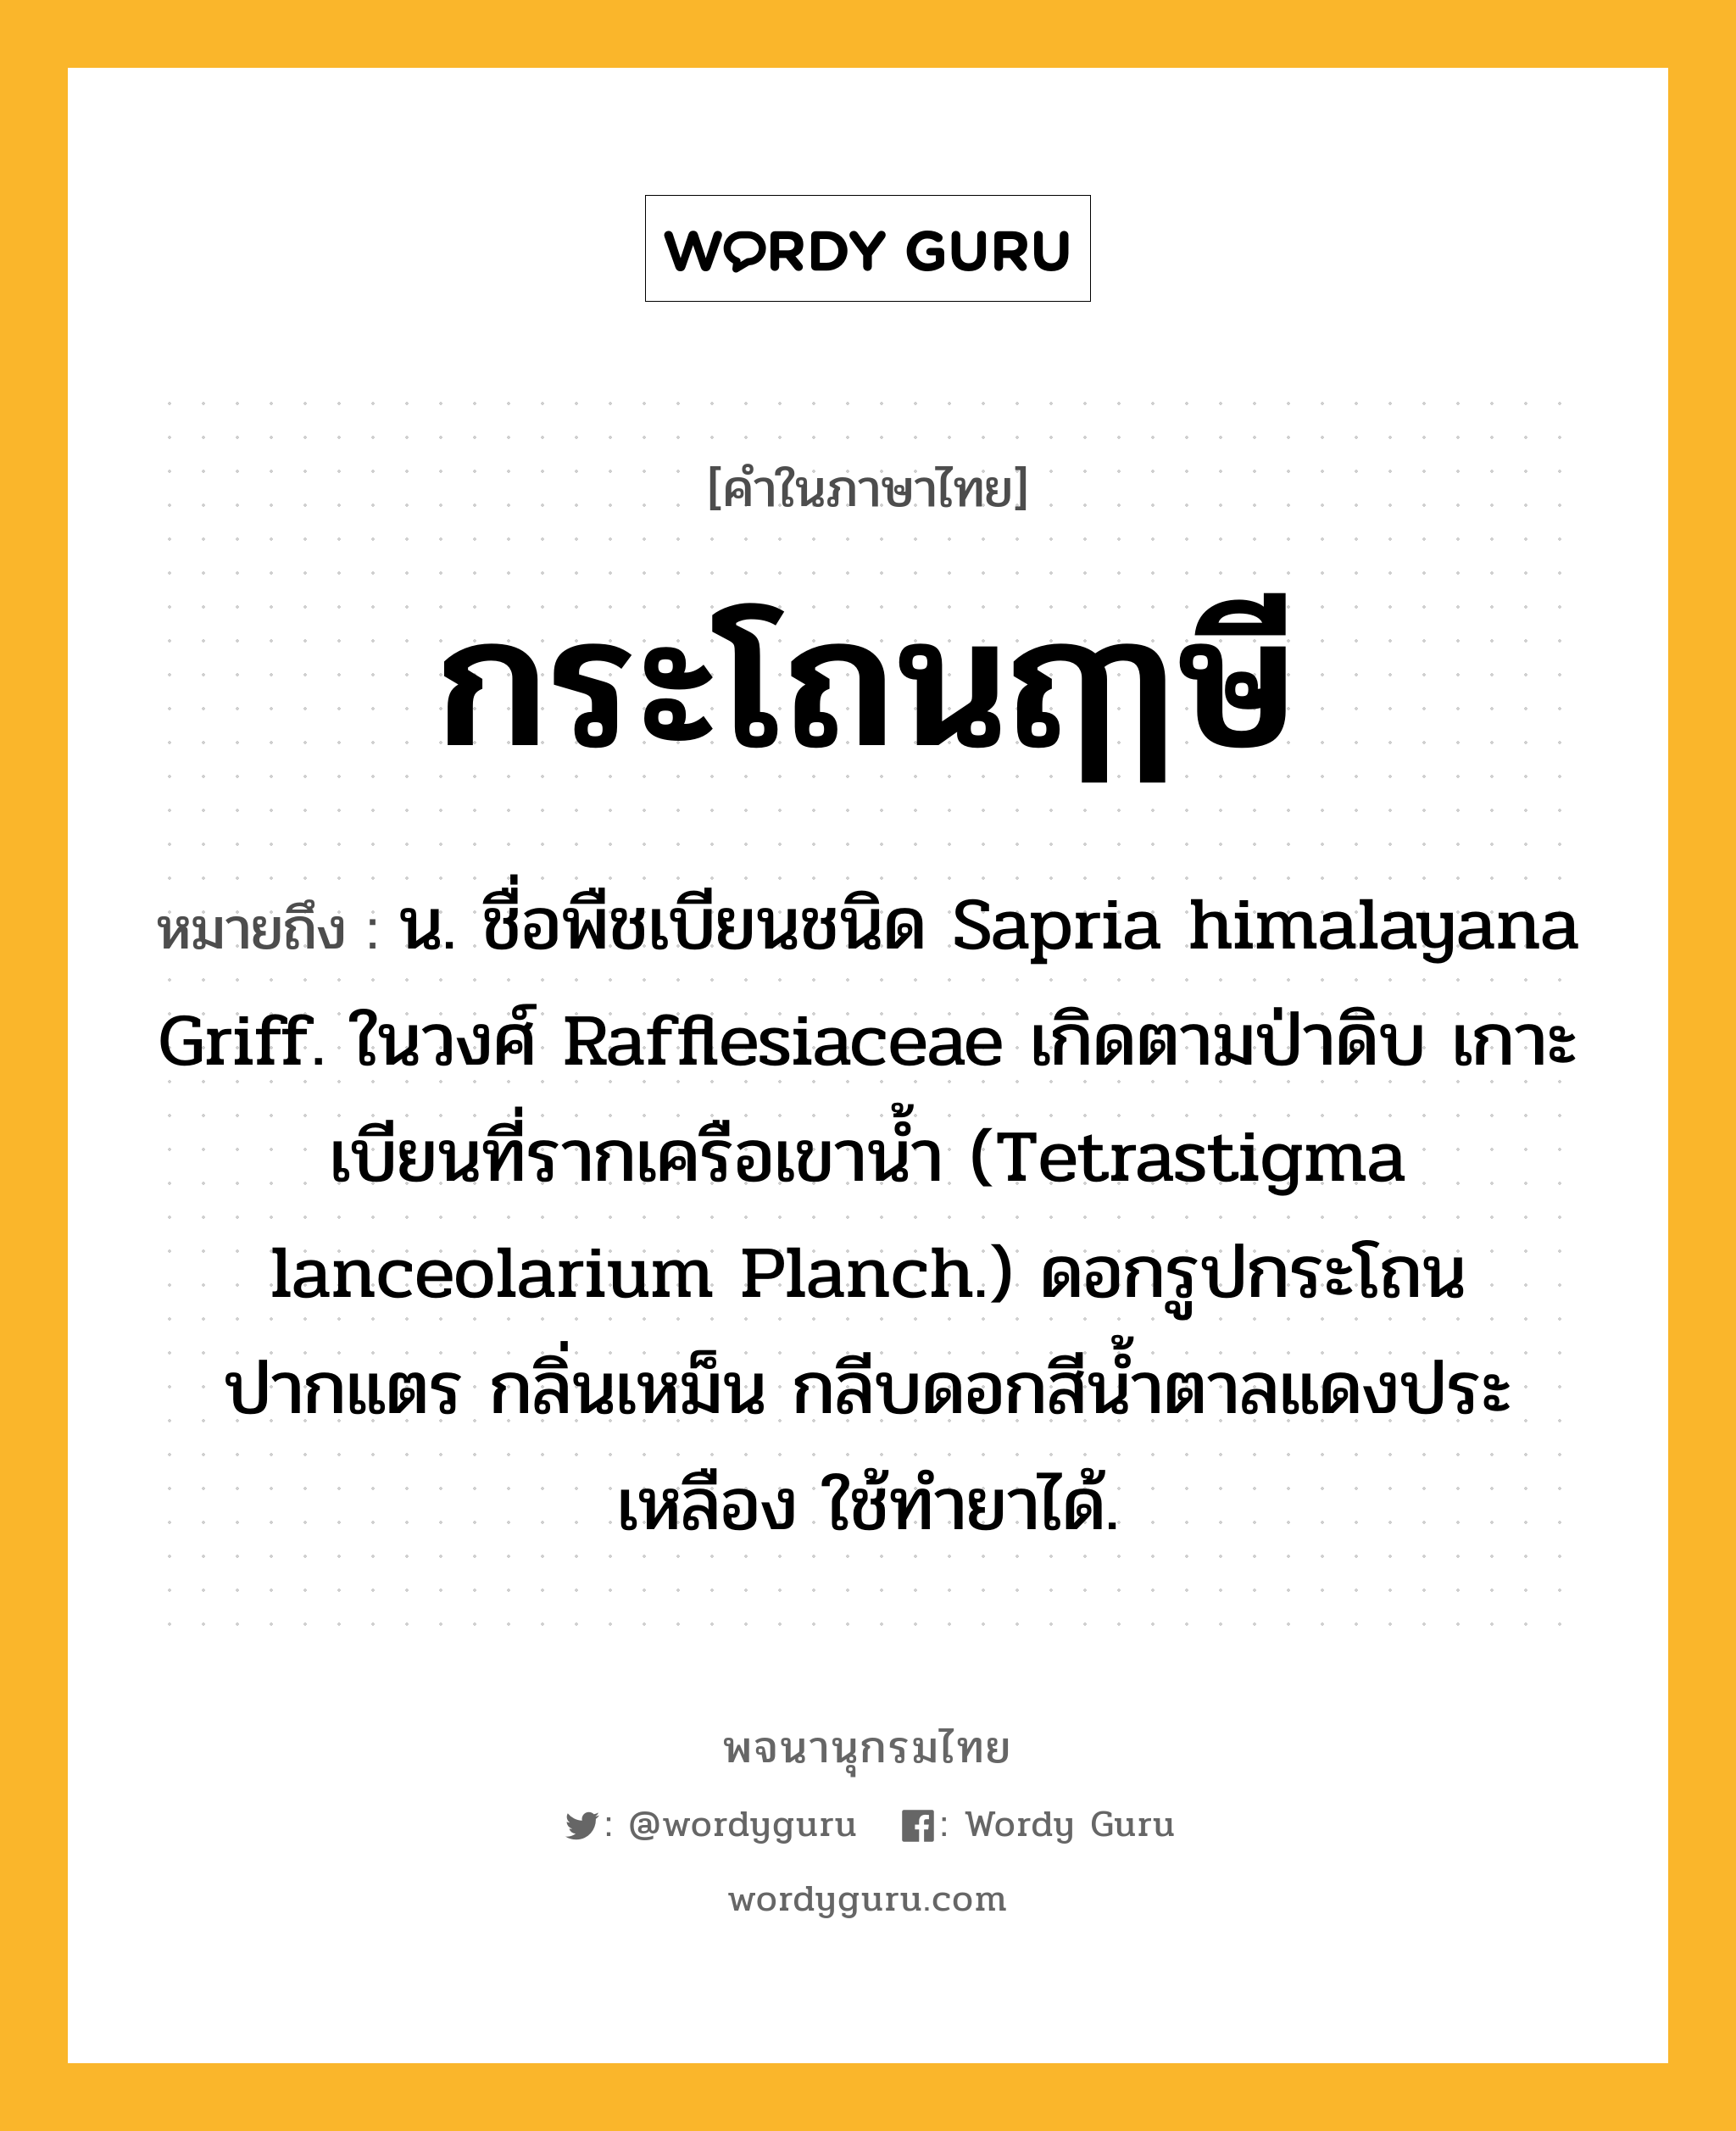 กระโถนฤๅษี ความหมาย หมายถึงอะไร?, คำในภาษาไทย กระโถนฤๅษี หมายถึง น. ชื่อพืชเบียนชนิด Sapria himalayana Griff. ในวงศ์ Rafflesiaceae เกิดตามป่าดิบ เกาะเบียนที่รากเครือเขานํ้า (Tetrastigma lanceolarium Planch.) ดอกรูปกระโถนปากแตร กลิ่นเหม็น กลีบดอกสีนํ้าตาลแดงประเหลือง ใช้ทํายาได้.